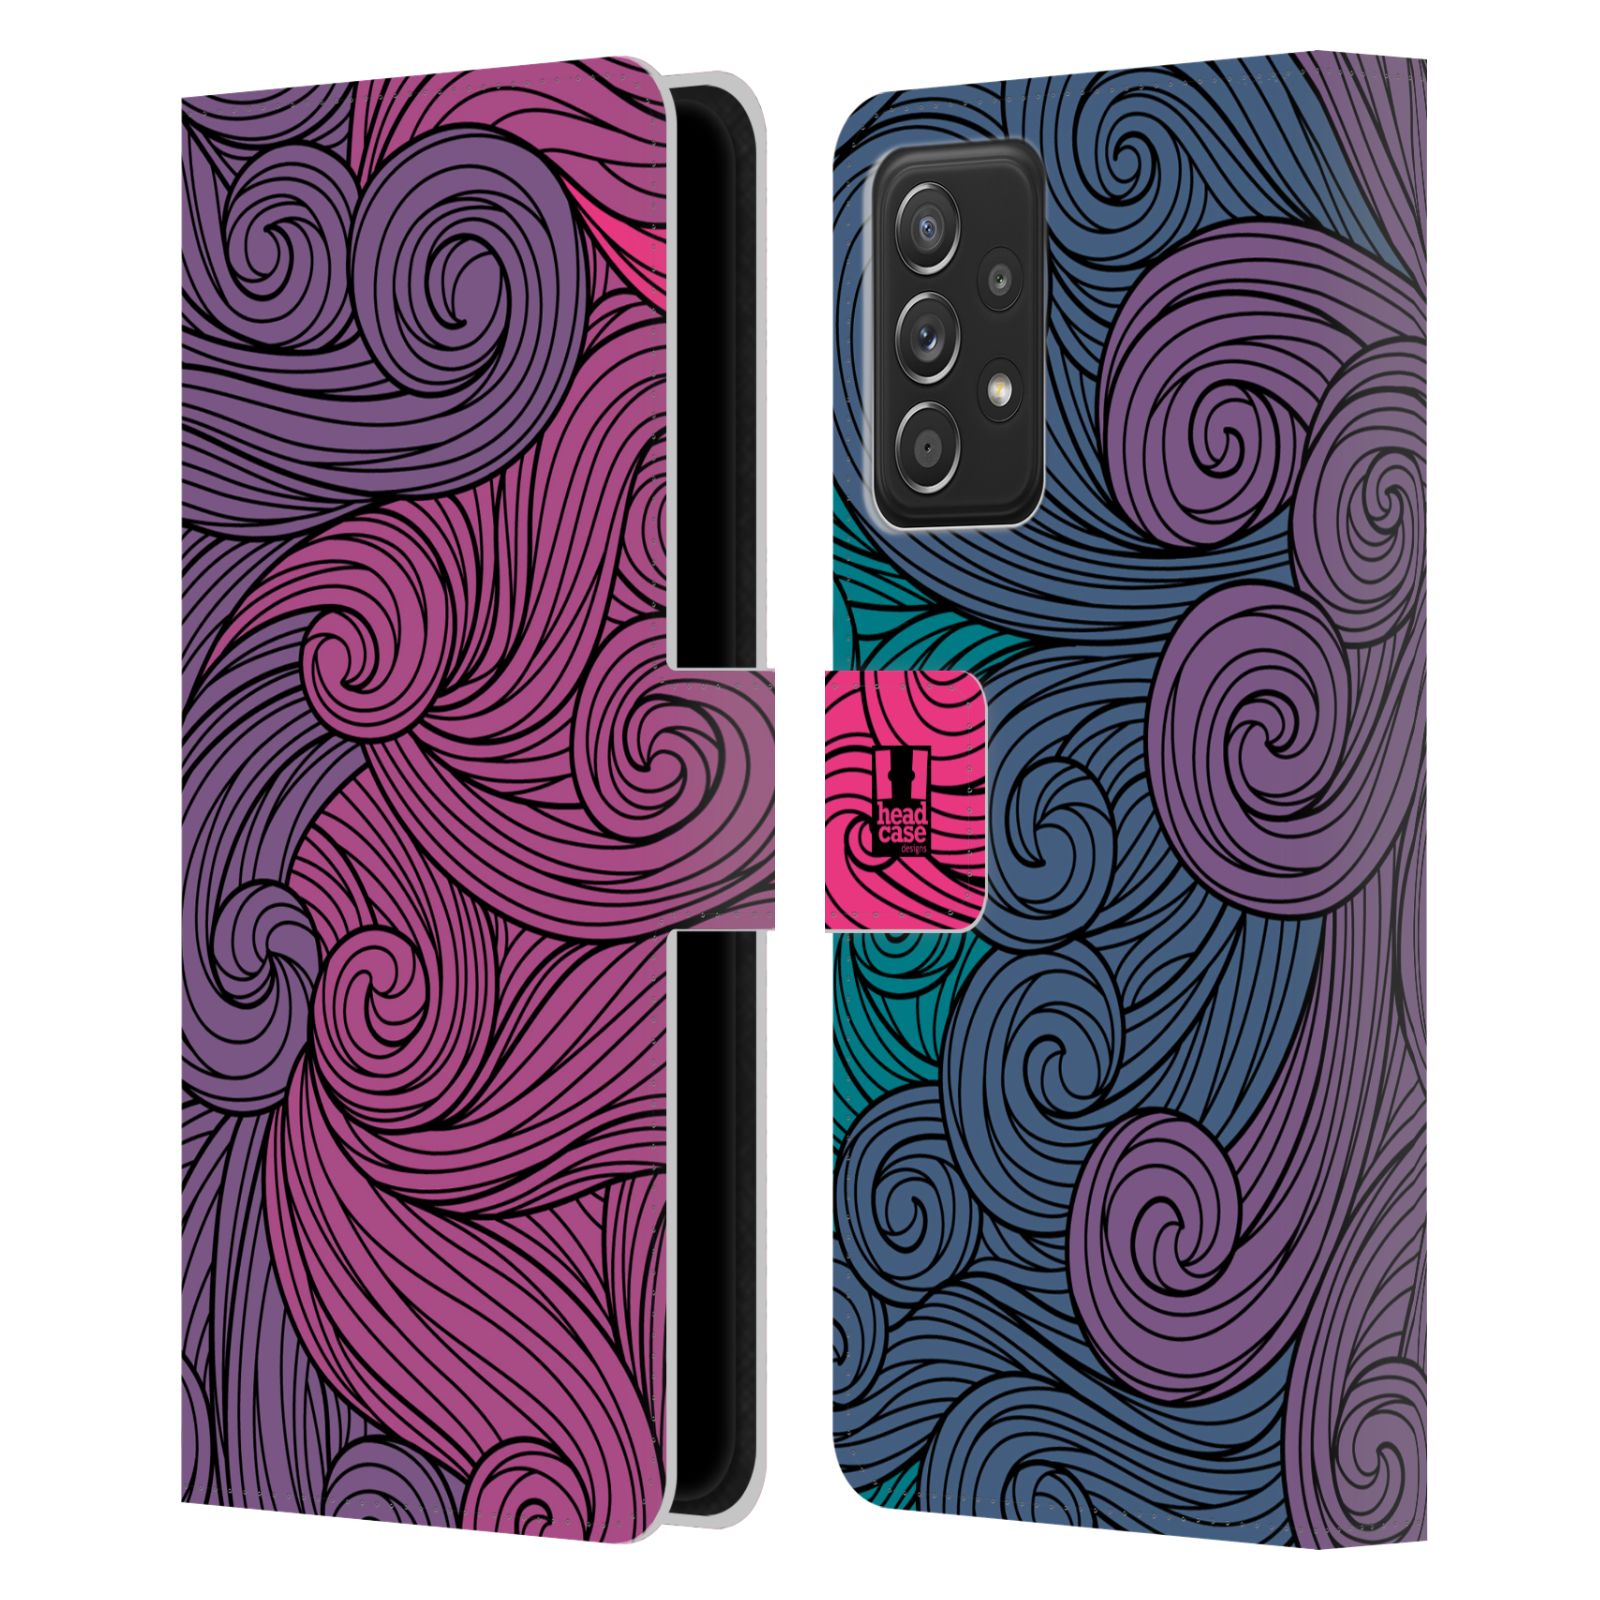 Pouzdro HEAD CASE na mobil Samsung Galaxy A52 / A52 5G / A52s 5G barevné vlny růžová a modrá